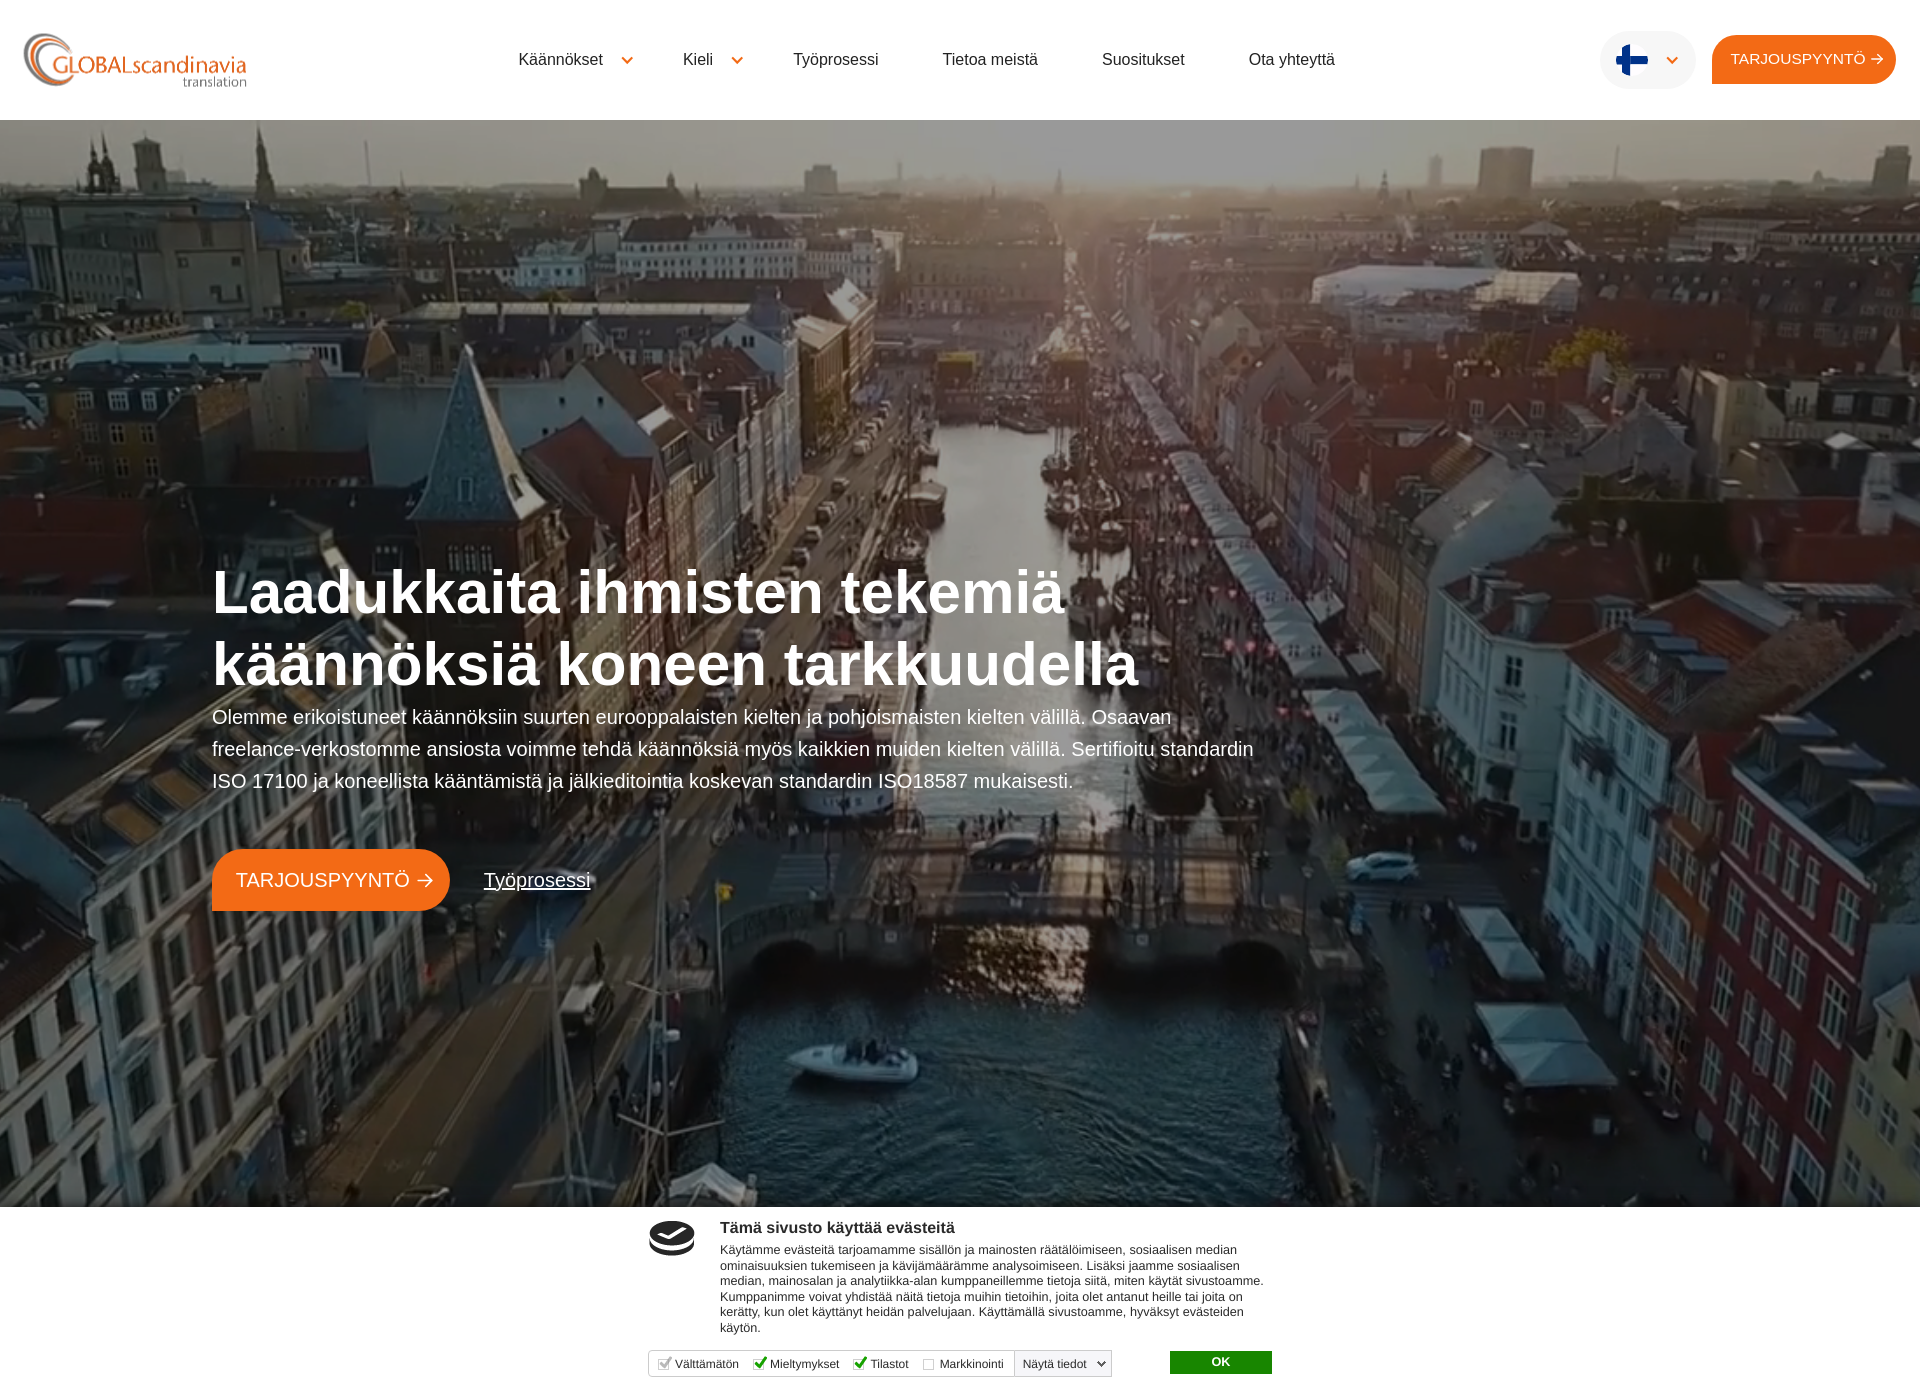 Näyttökuva globalscandinavia.fi